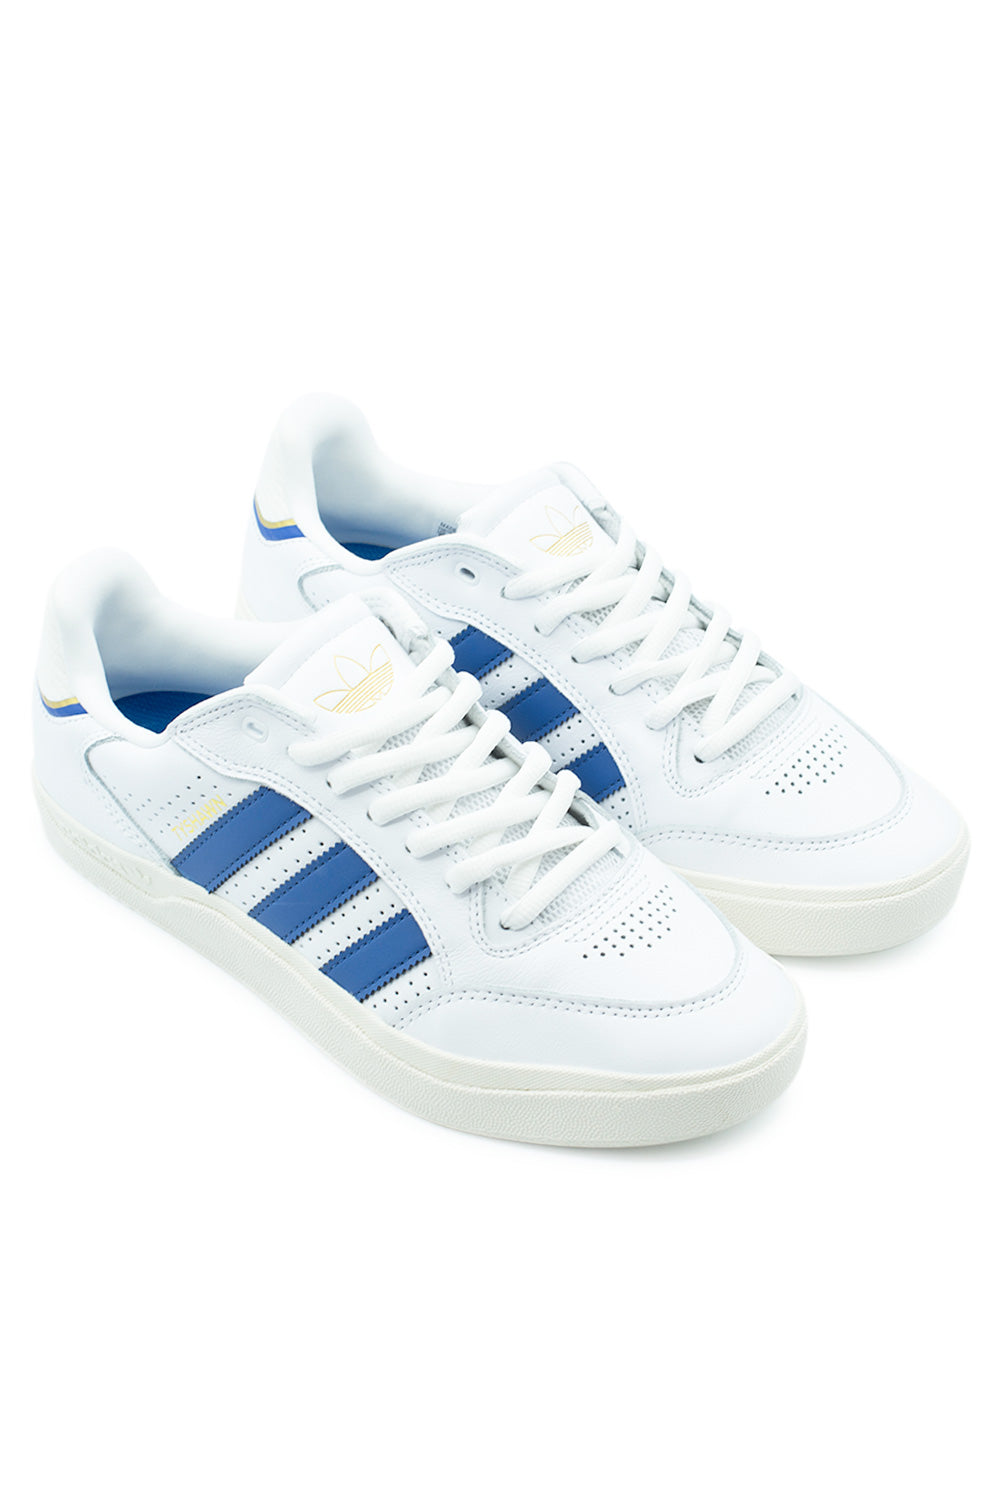 Adidas Tyshawn Low Shoe Cloud White / Royal Blue / Chalk White - BONKERS